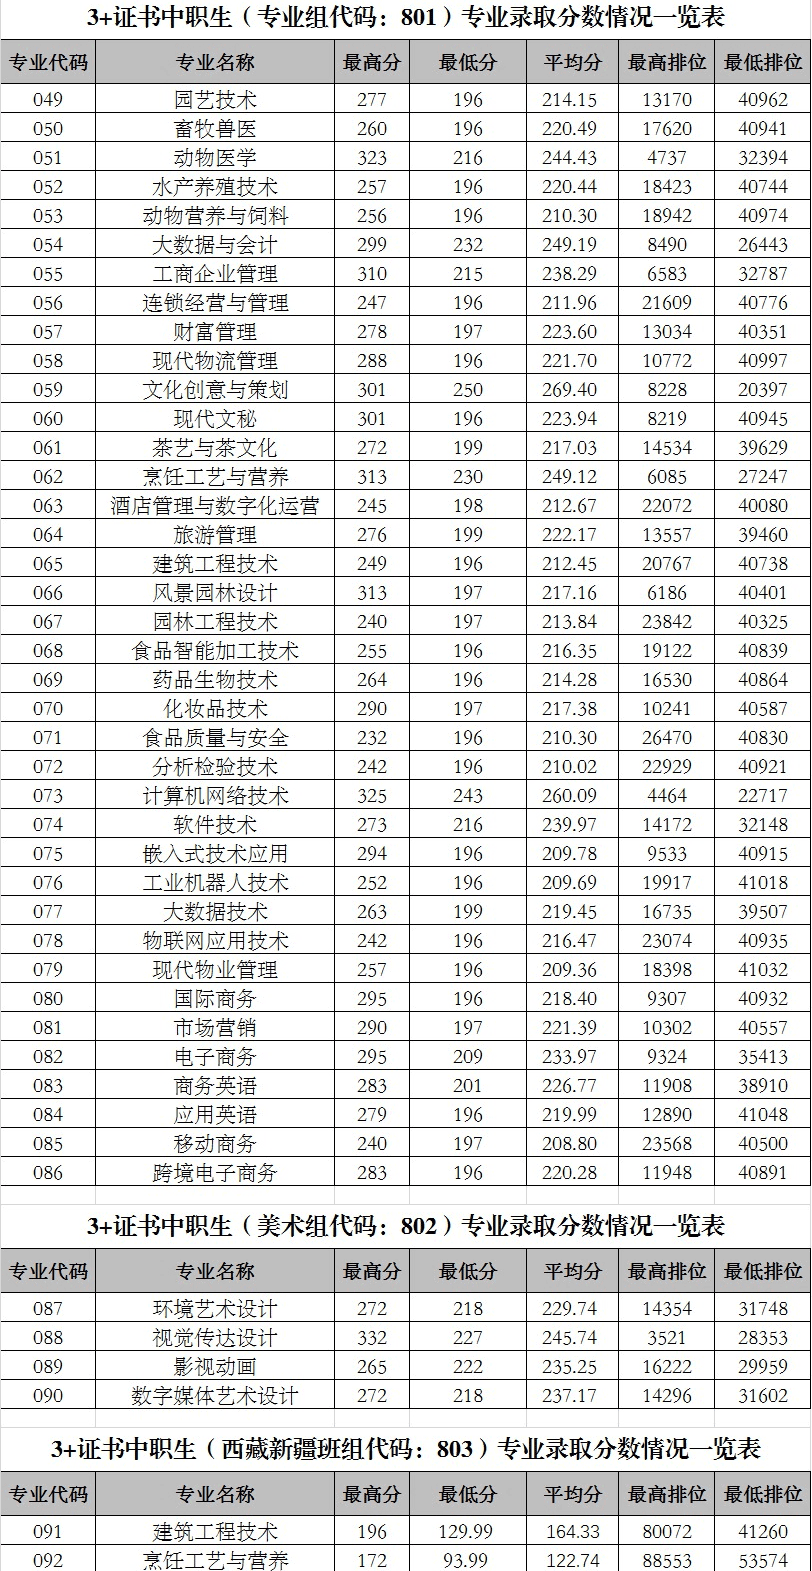 2021广东科贸职业学院3+证书分数线